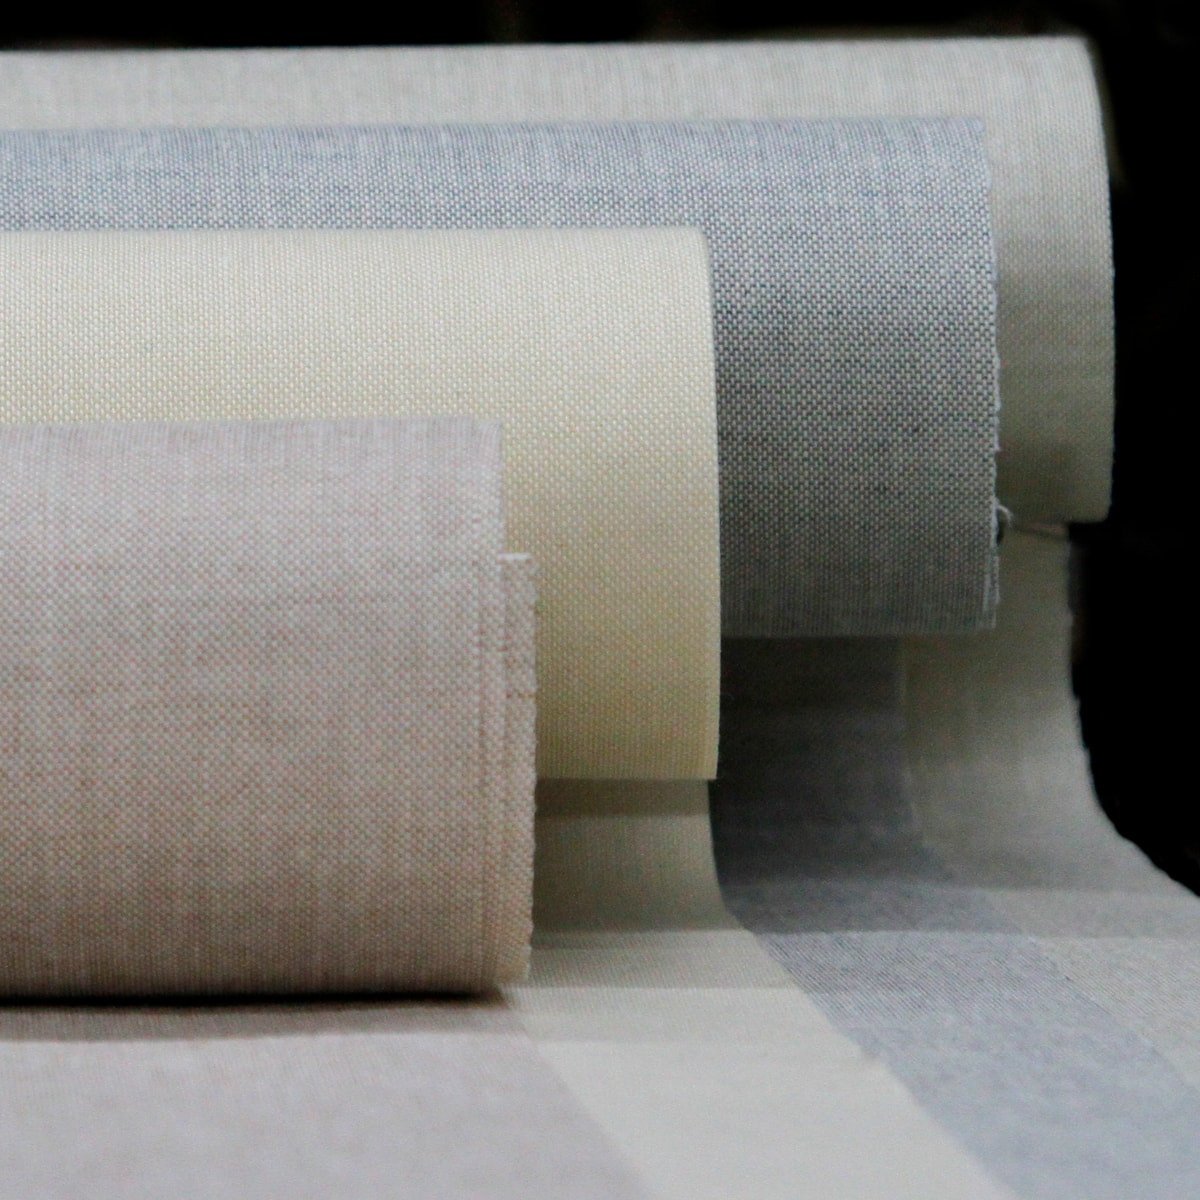 CIALINEN | Cialinen ist ein Canvas aus 100% Baumwolle mit Textur und natürlichem Design. Es wird für die Herstellung von Exlibris und beschichteten Abdeckungen, Kassetten und Feilen verwendet.